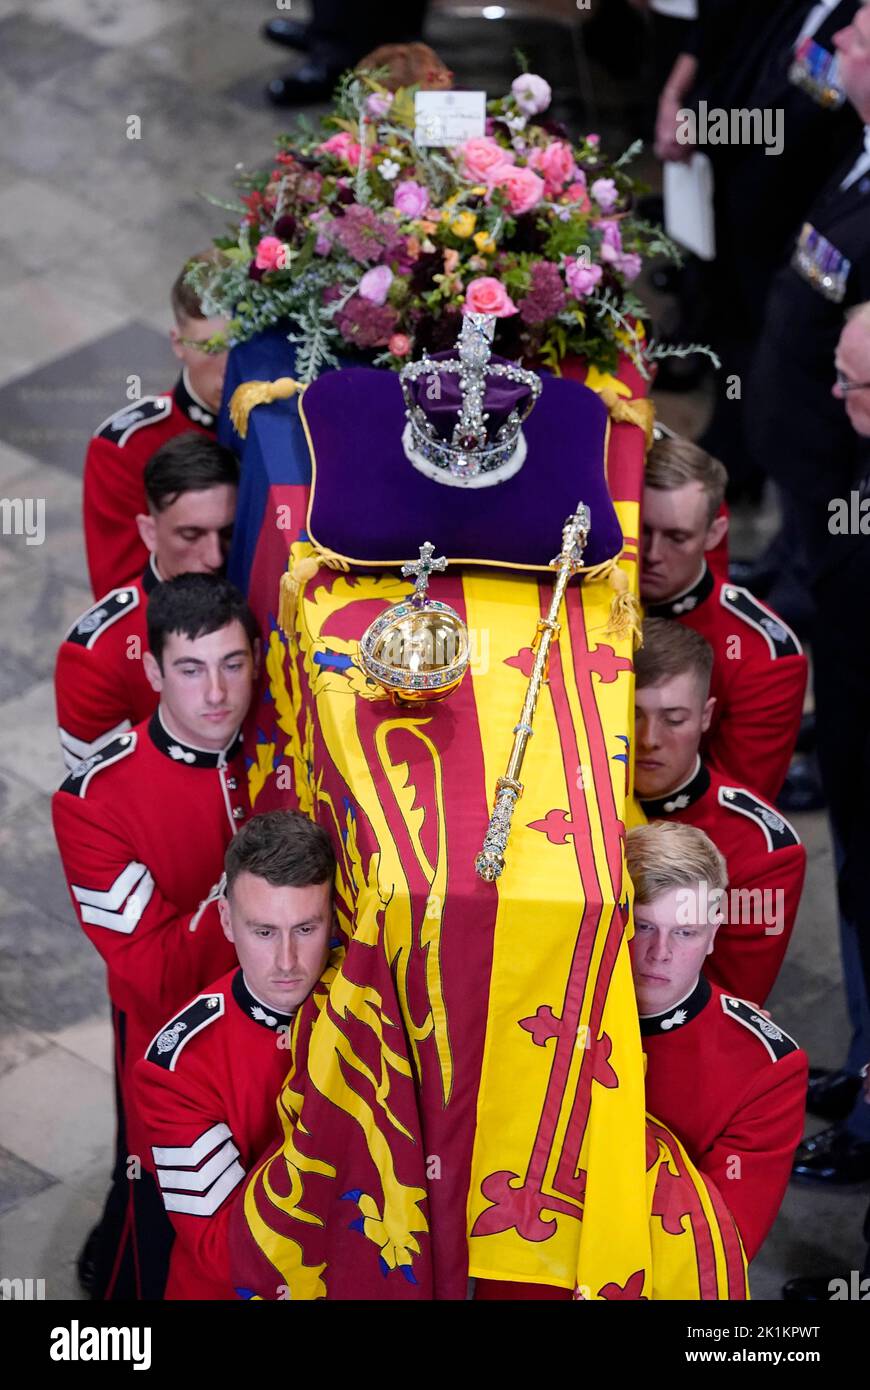 Le cercueil de la reine Élisabeth II, drapé dans le Standard royal avec la Couronne d'État impériale et l'orbe et le sceptre du souverain, est effectué de l'abbaye de Westminster après son funérailles d'État. Date de la photo: Lundi 19 septembre 2022. Banque D'Images